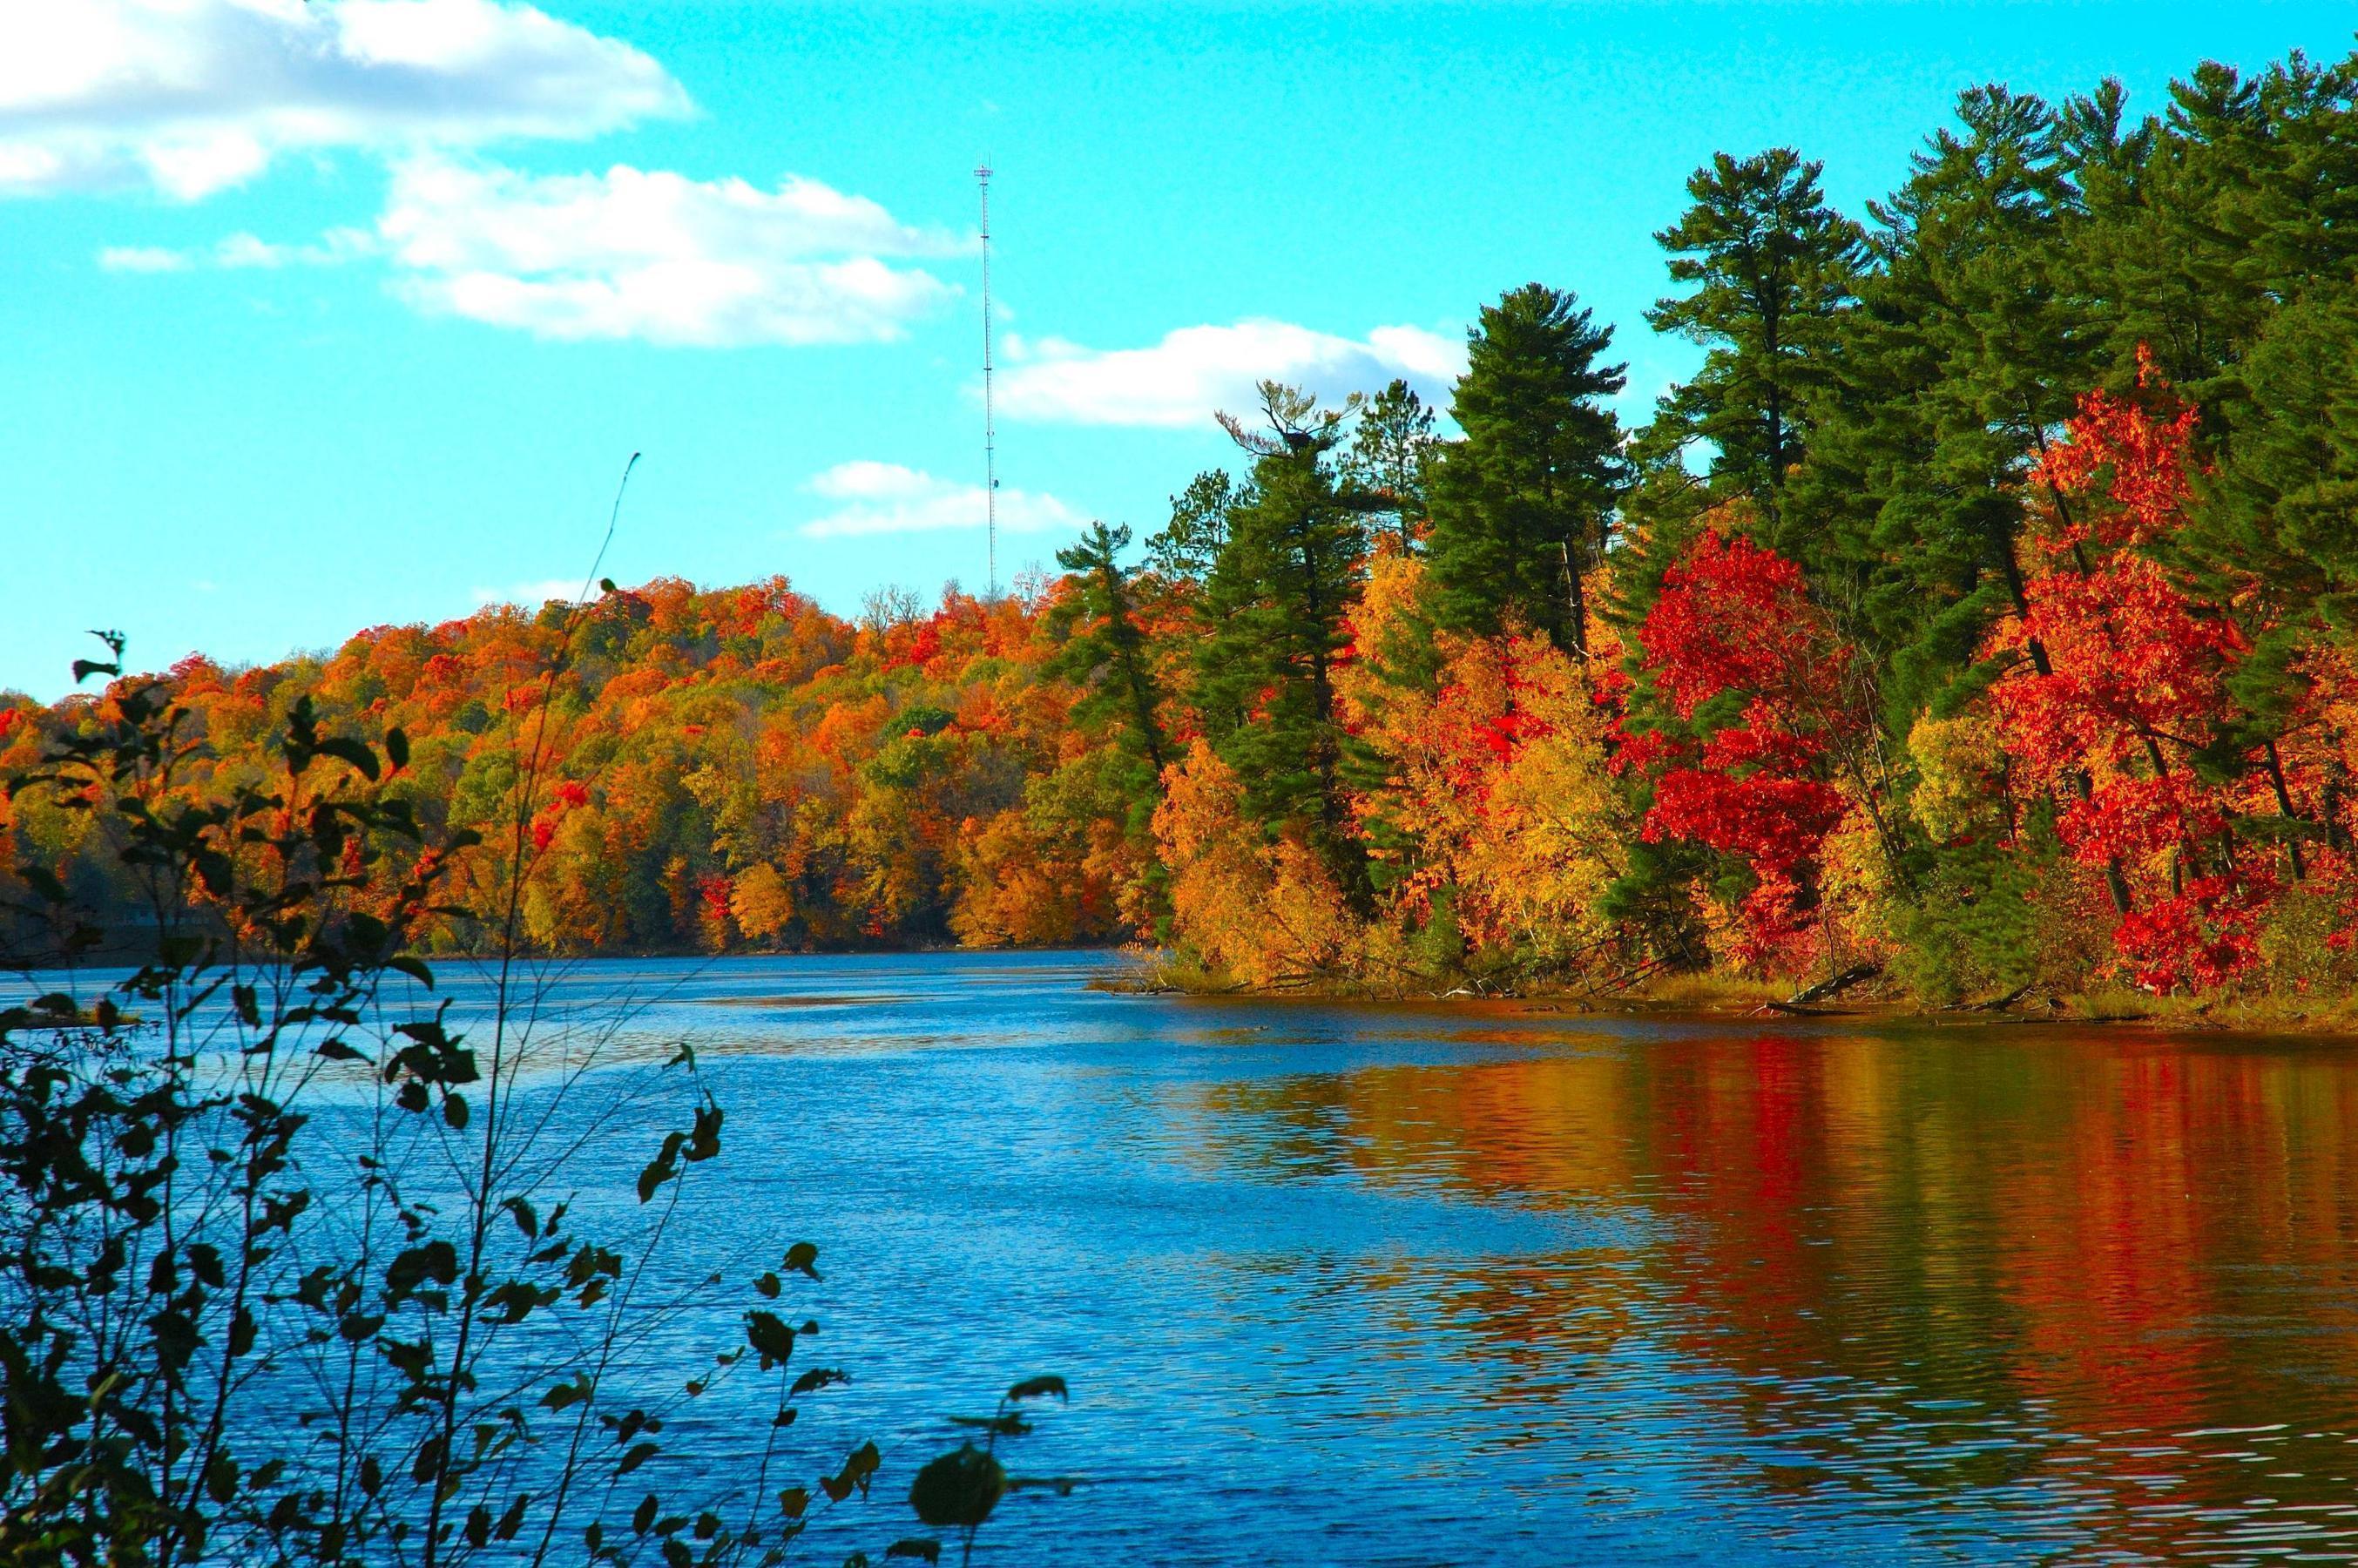 Scenic Autumn Desktop Wallpaper. Best Design Options